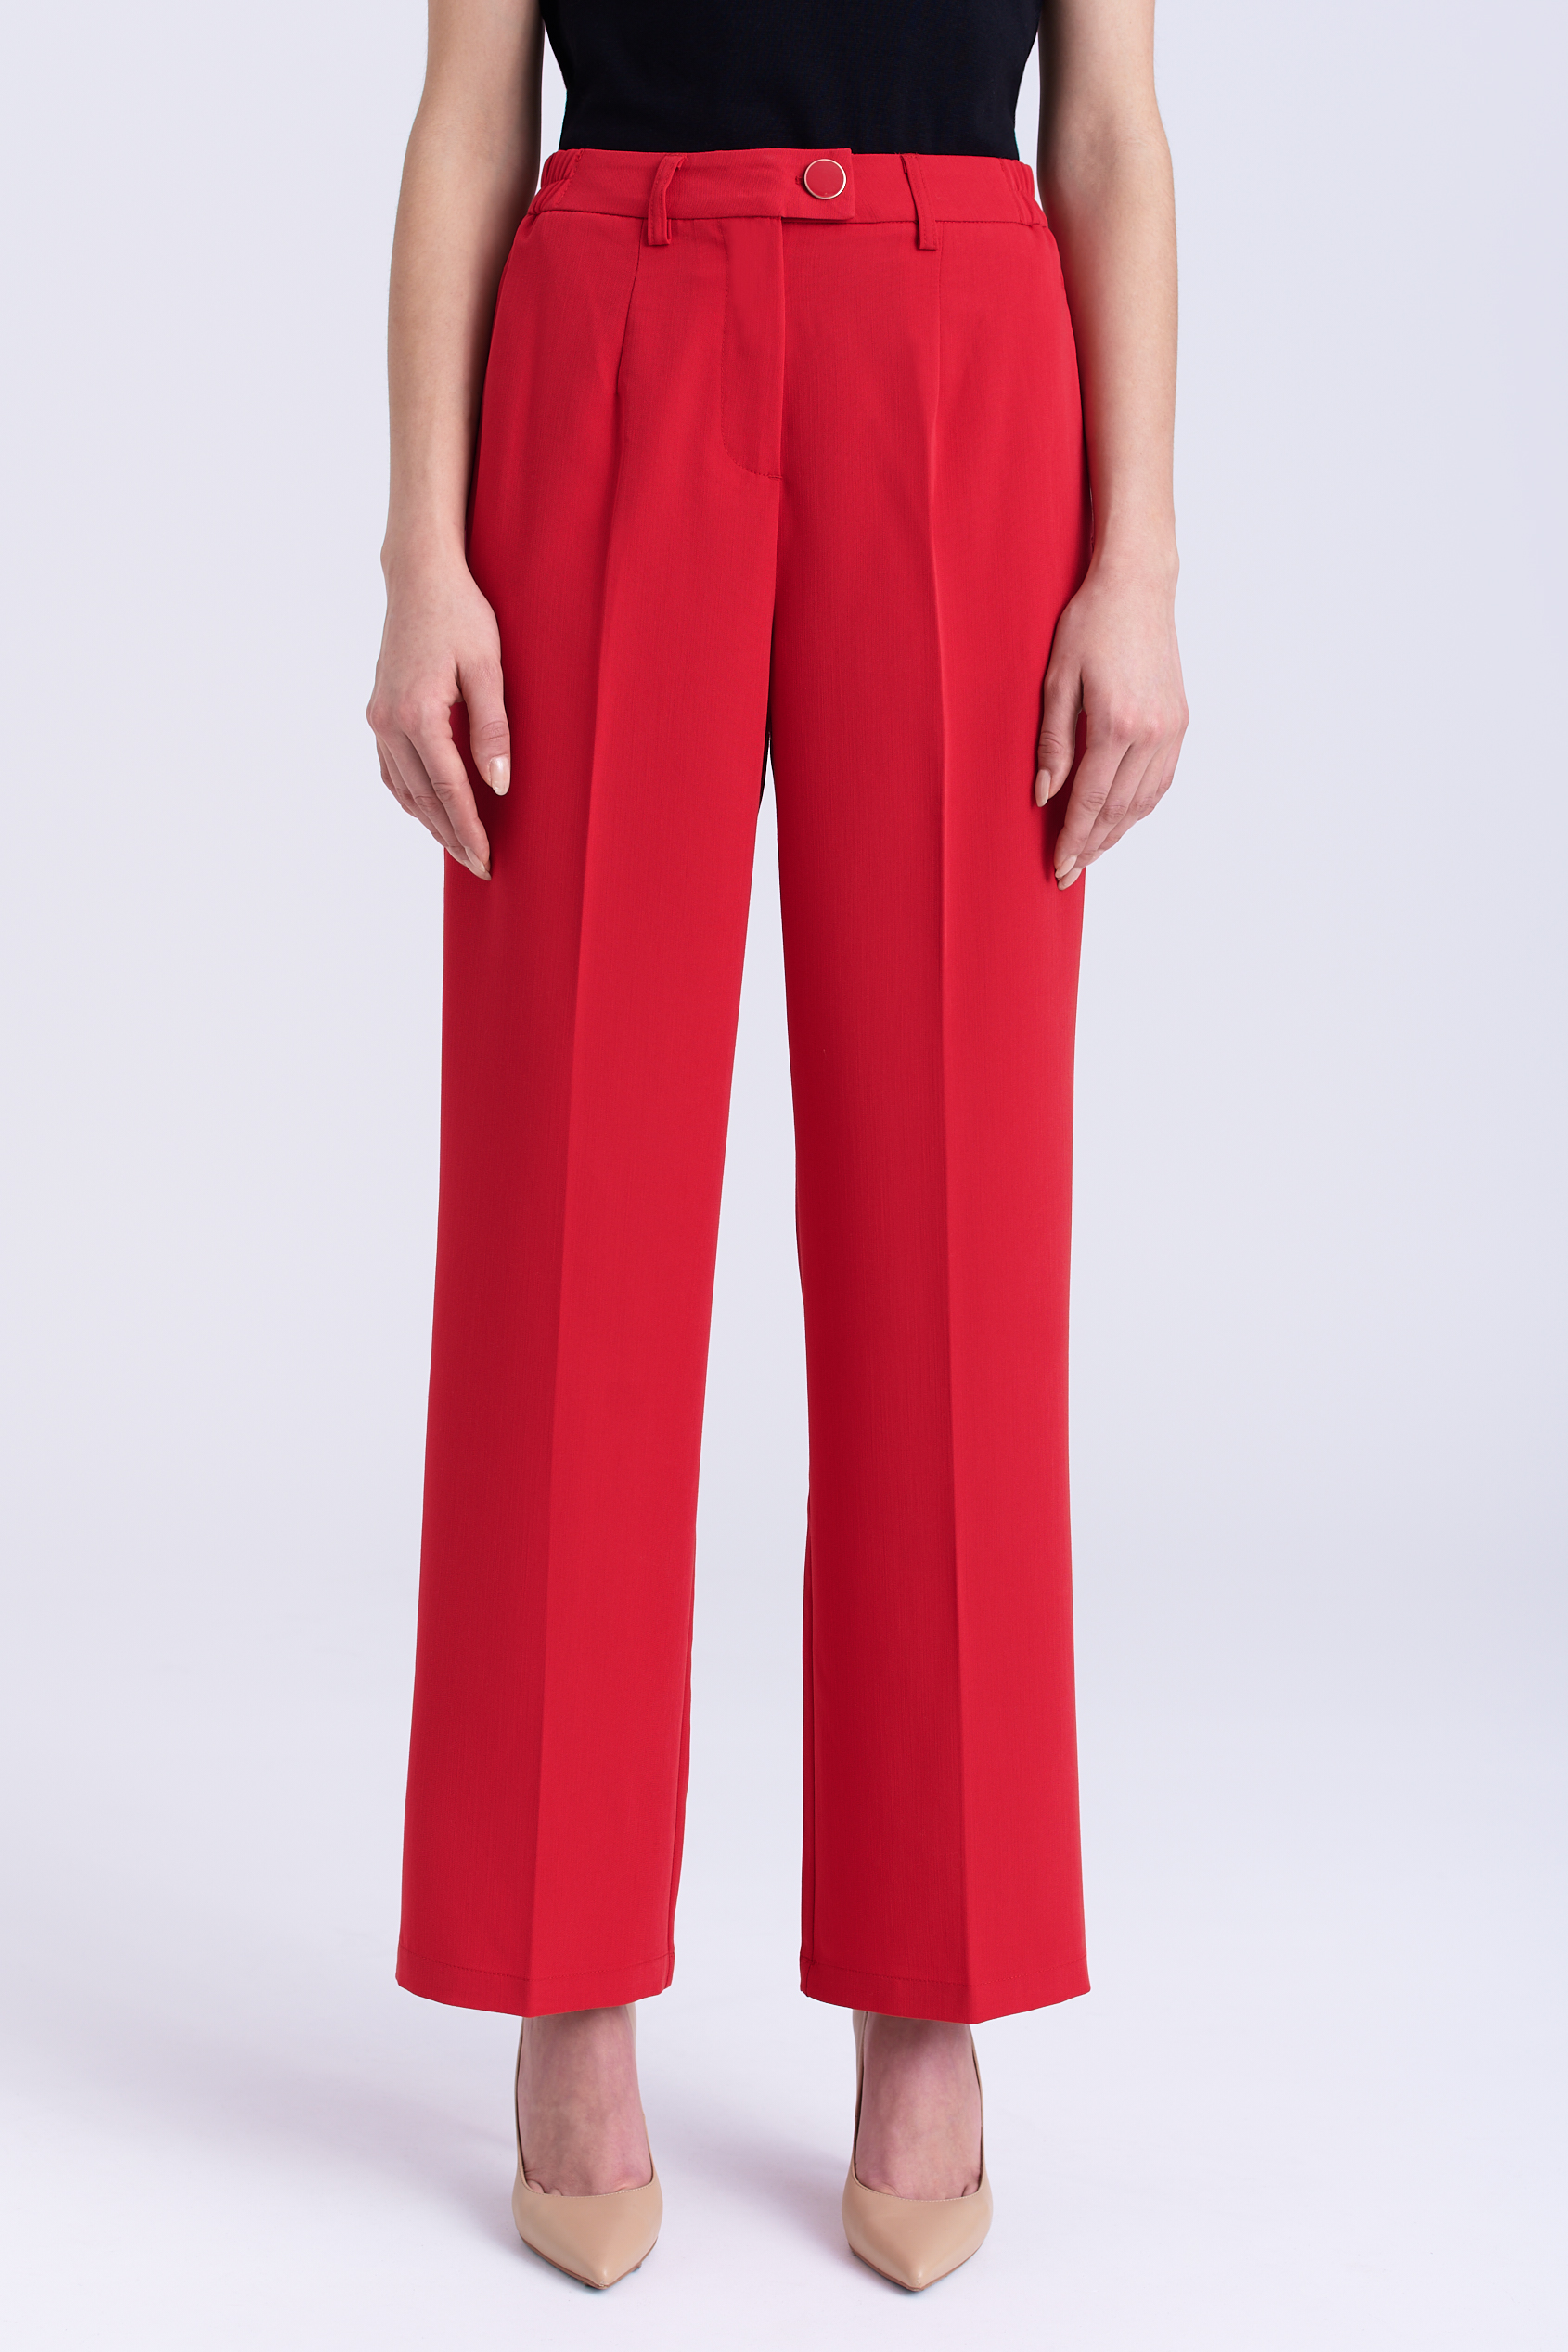 Eleganckie czerwone spodnie